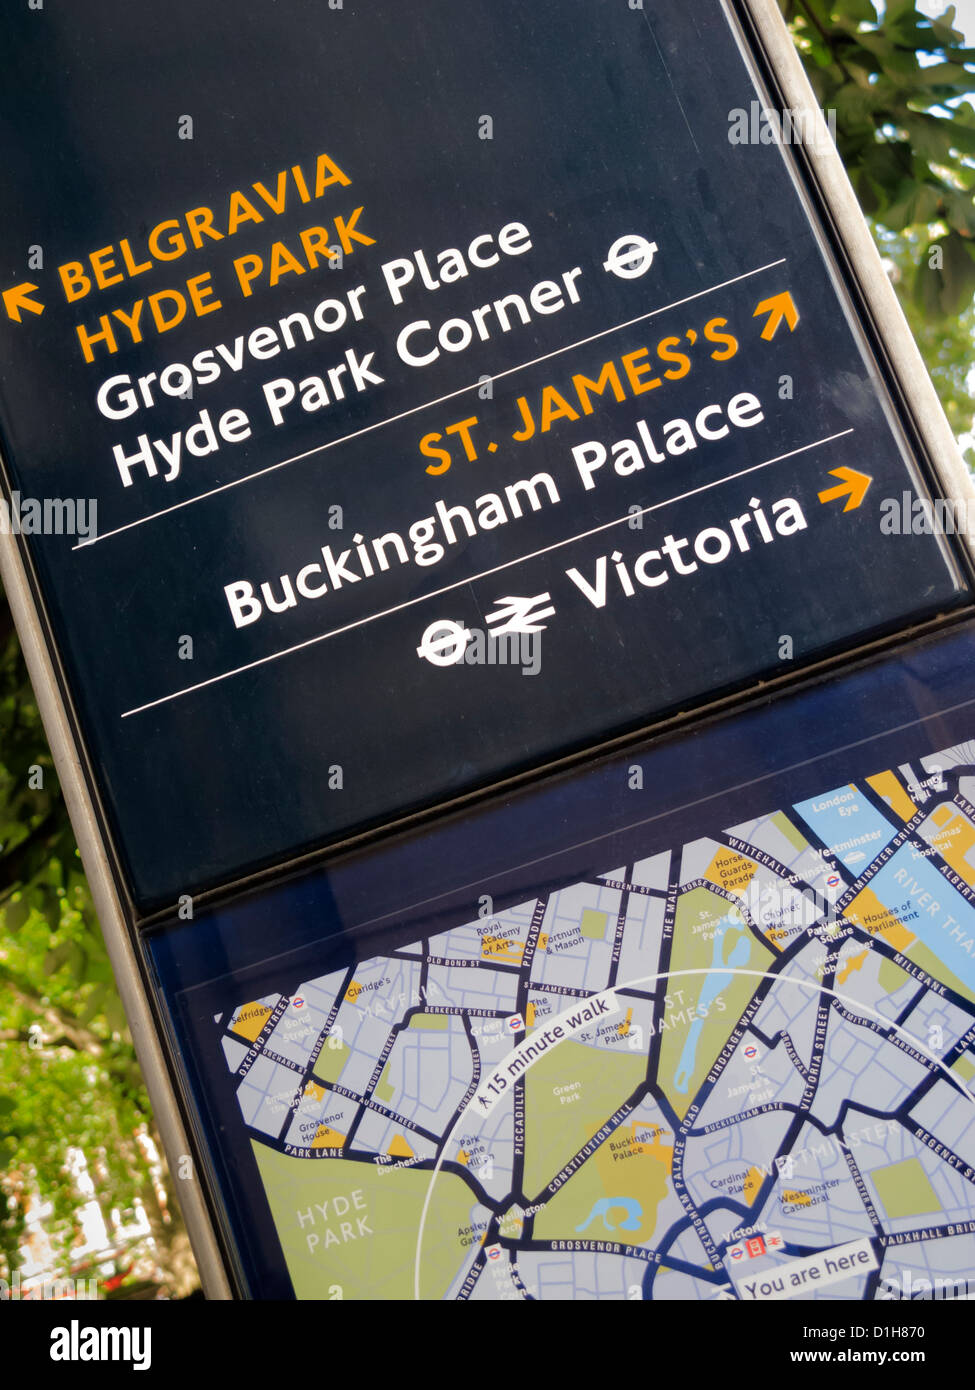 Signo de la información, Belgravia, Hyde Park, el Palacio de Buckingham, Victoria, Londres, Inglaterra Foto de stock